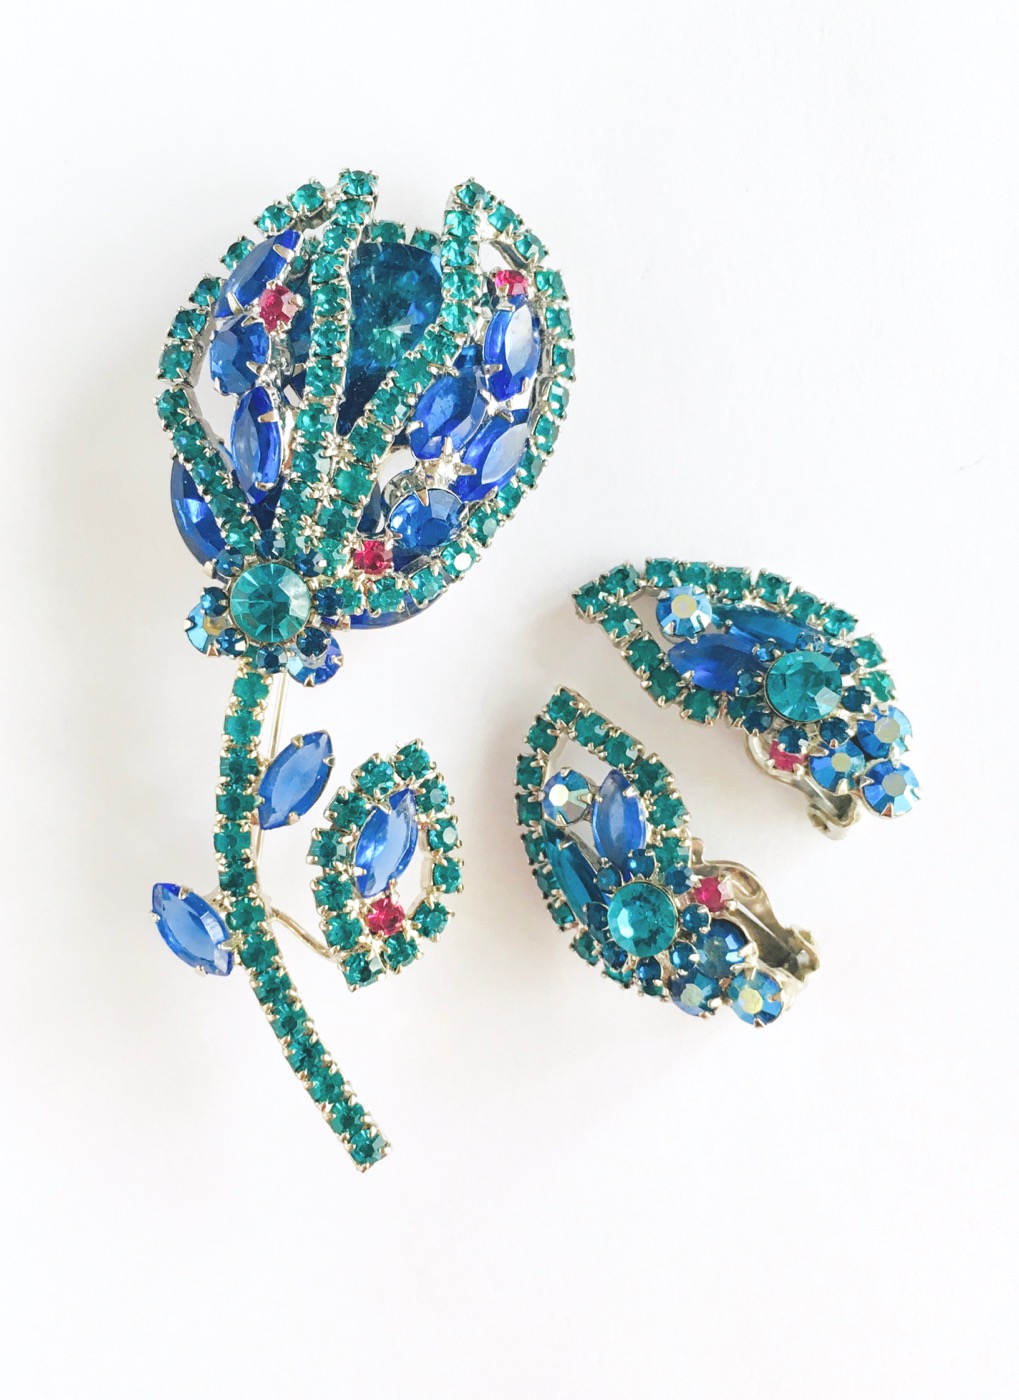 50s Juliana blue rhinestone flower brooch + earrings set